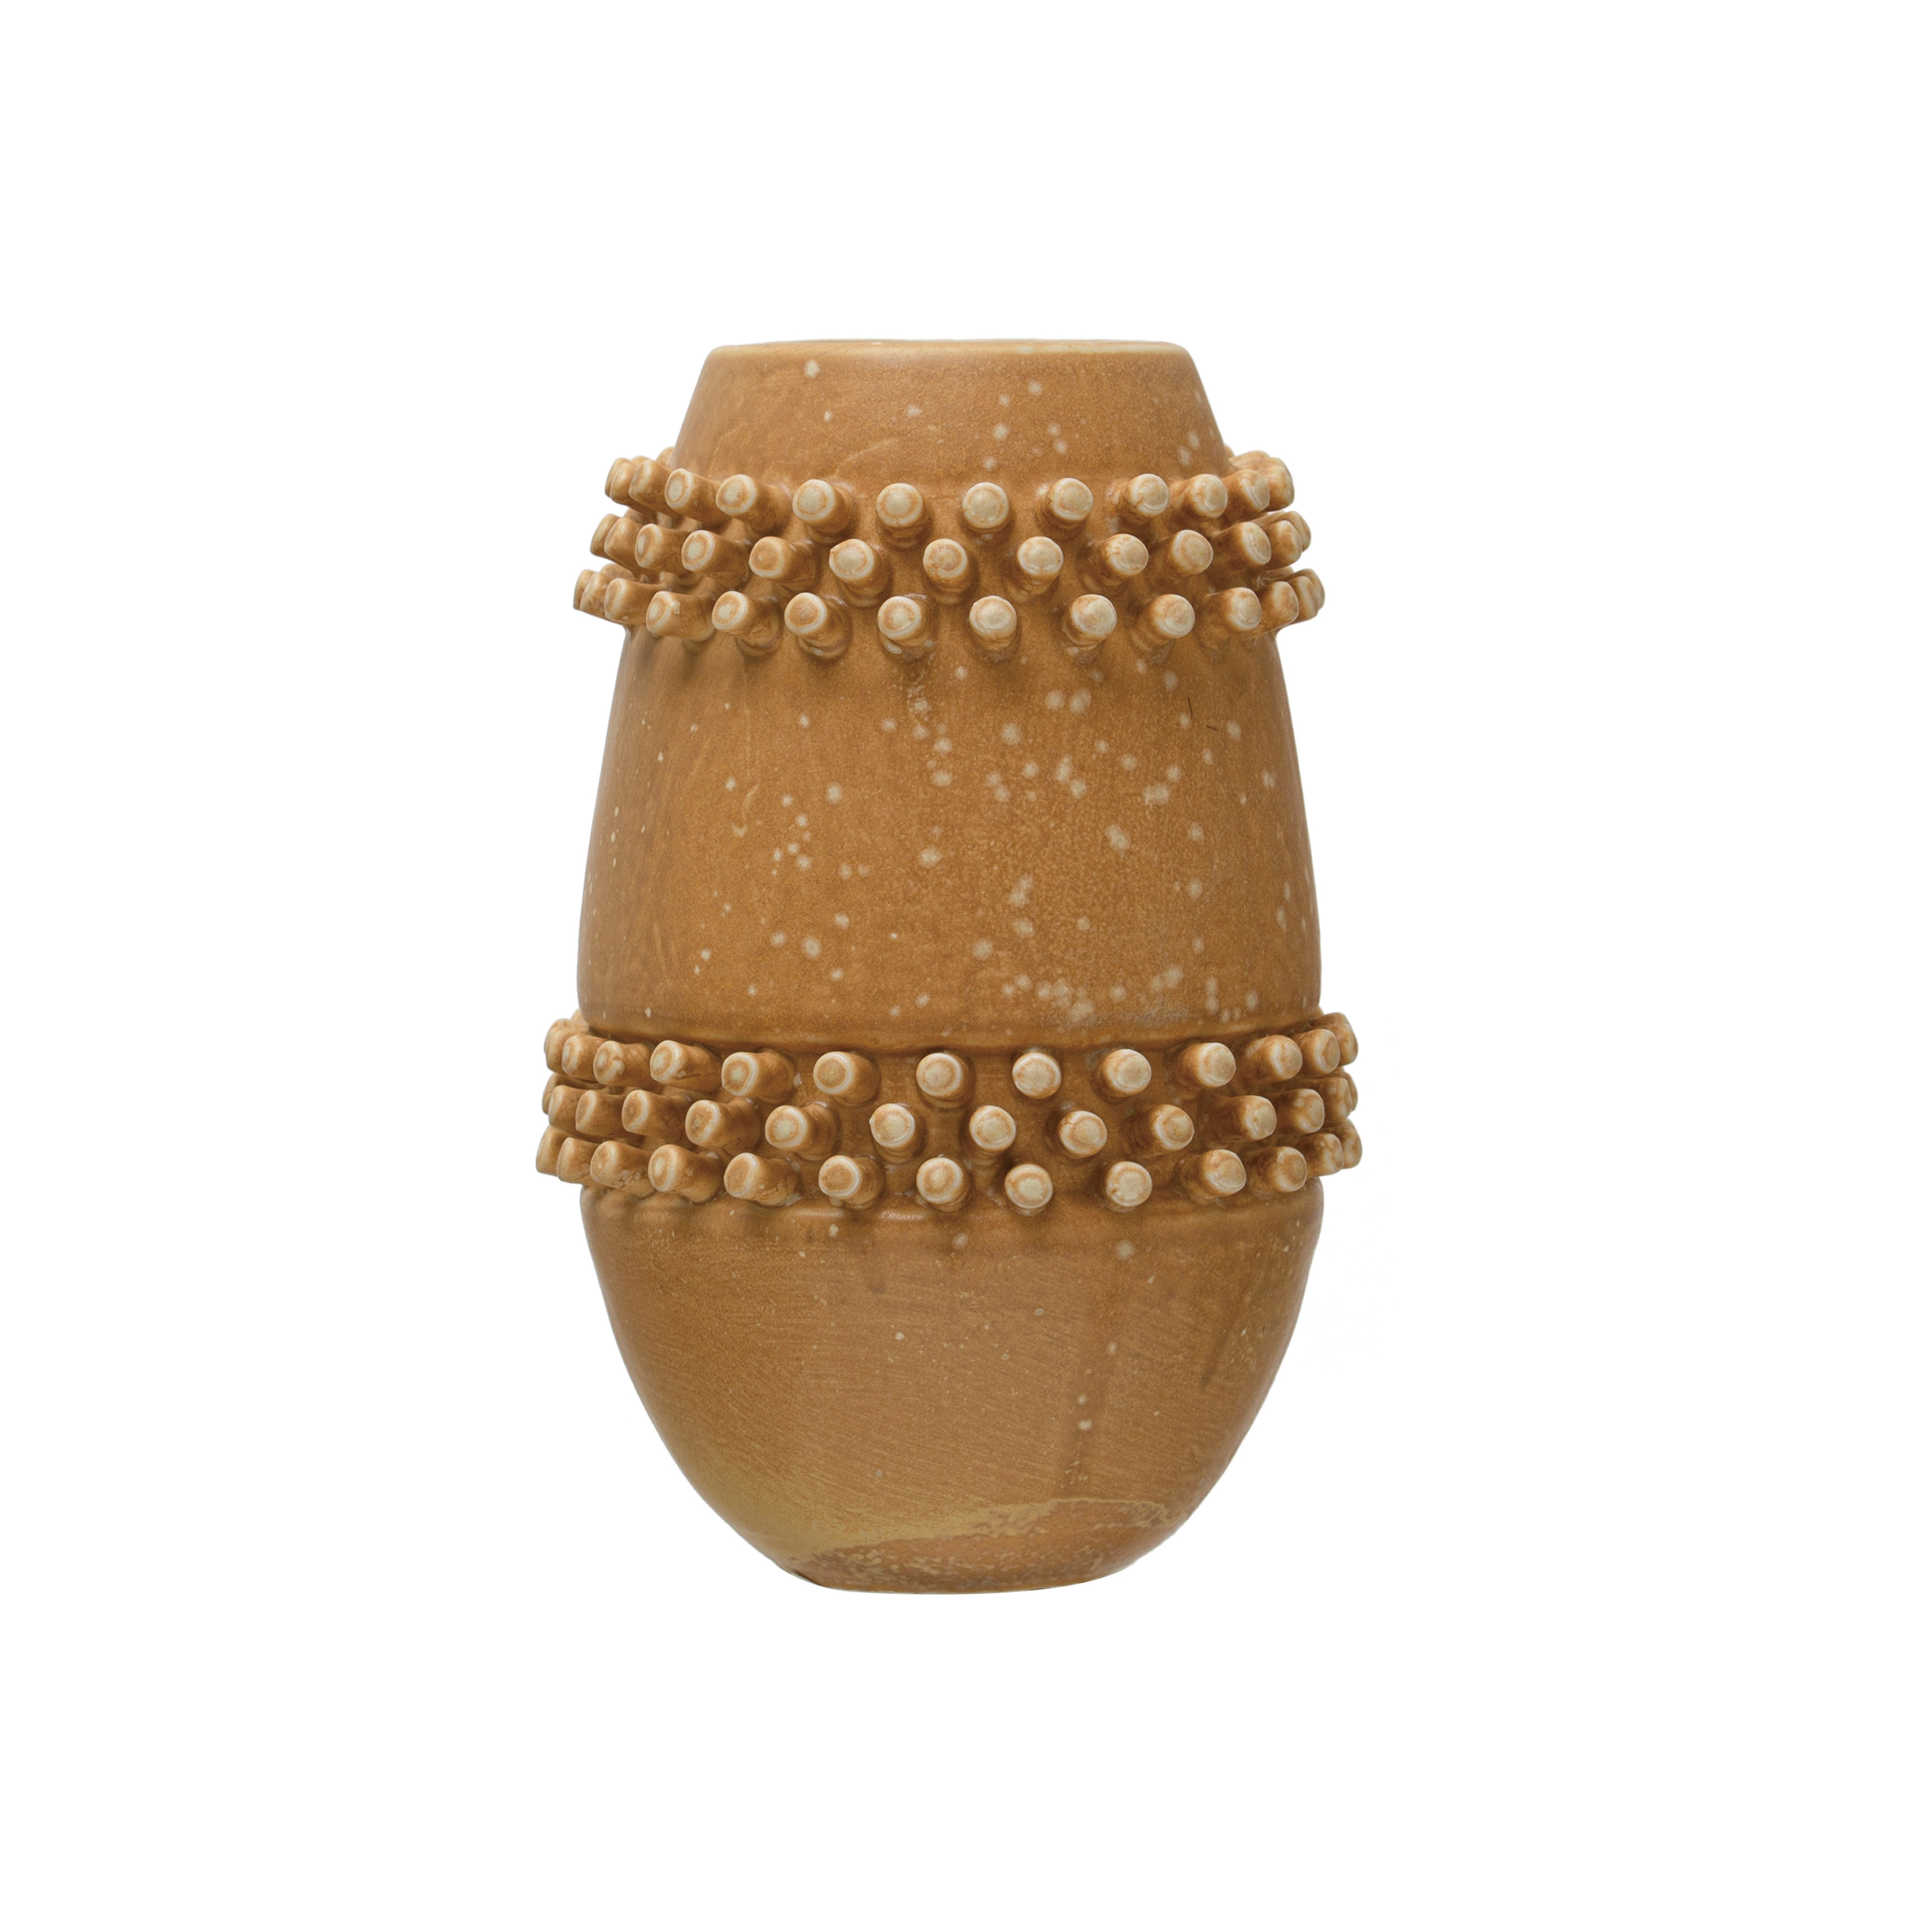  Stoneware Vase with Raised Dots, Terracotta Reactive Glaze - Image 0